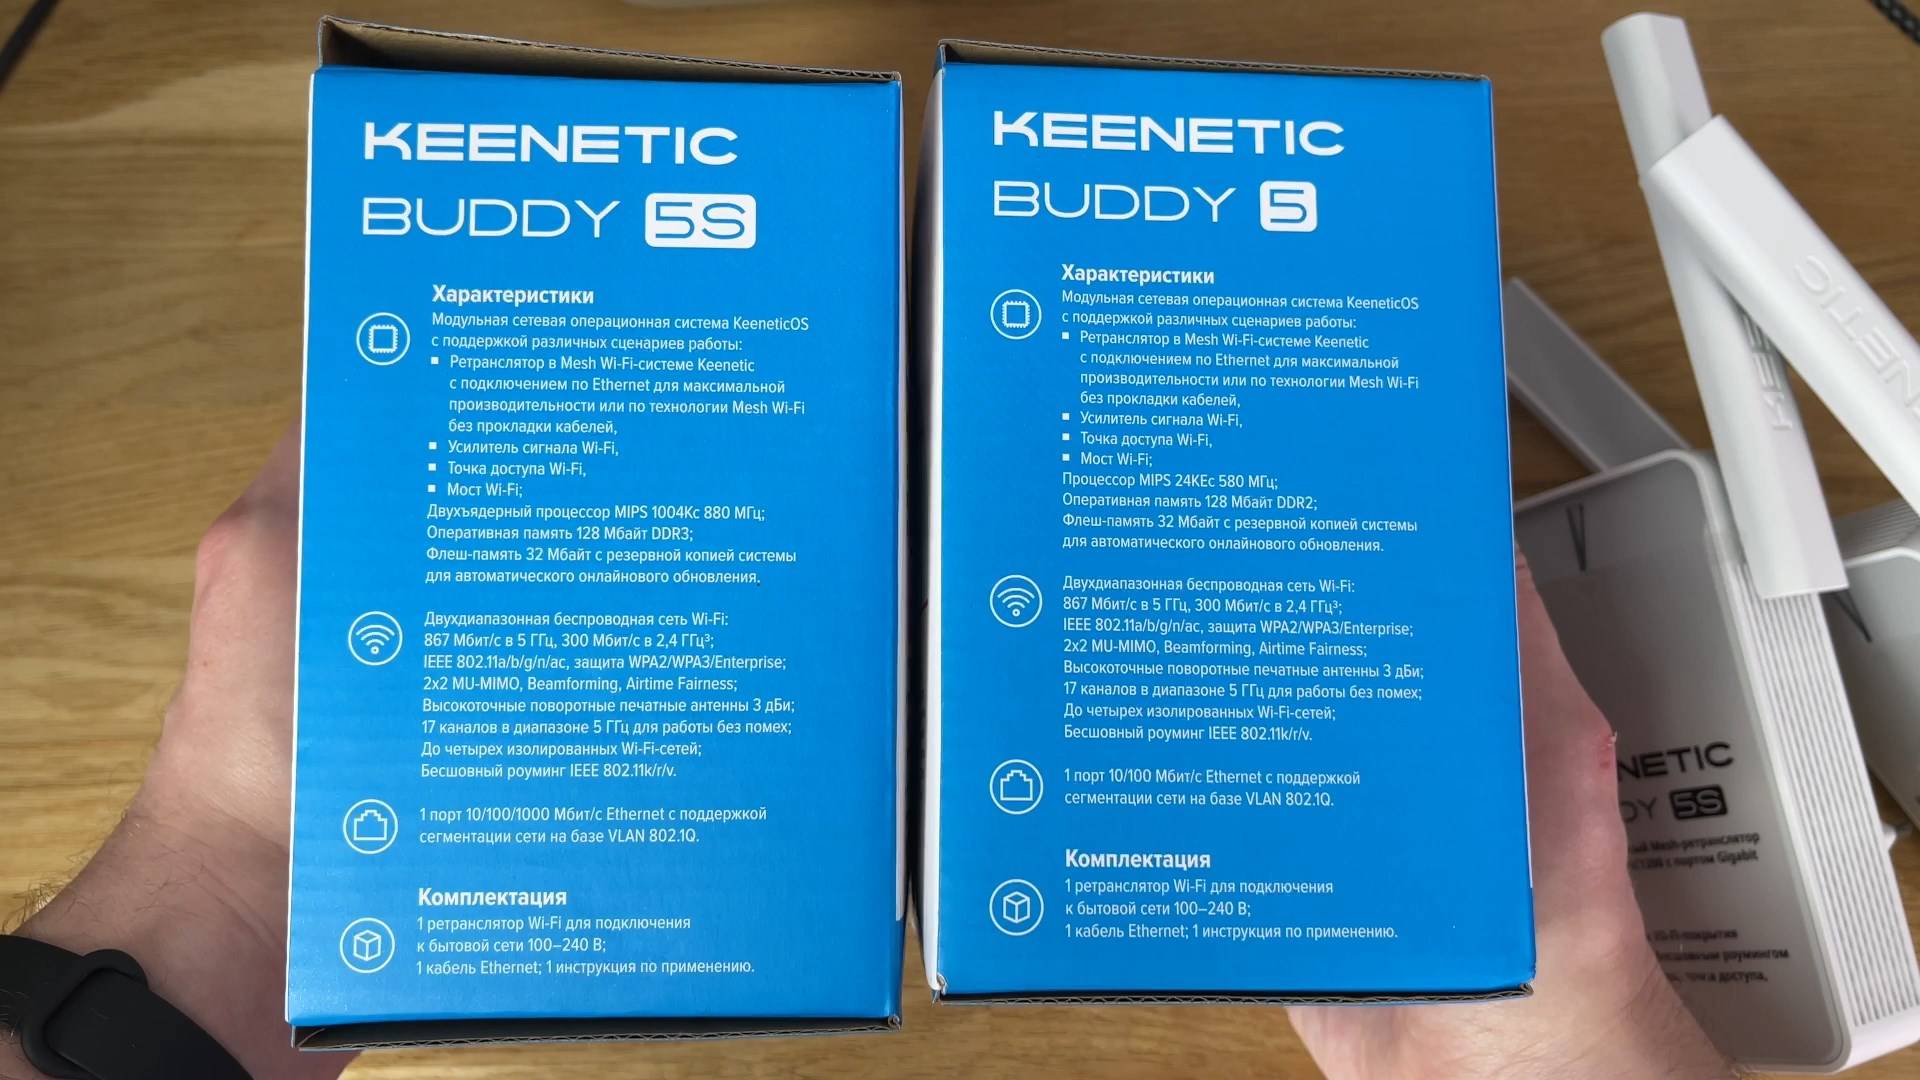 Кинетик бади. Keenetic buddy 5s KN-3410. Keenetic buddy 5 (KN-3310). Keenetic buddy 5s. Wi-Fi усилитель сигнала (репитер) Keenetic buddy 5 (KN-3310), серый.